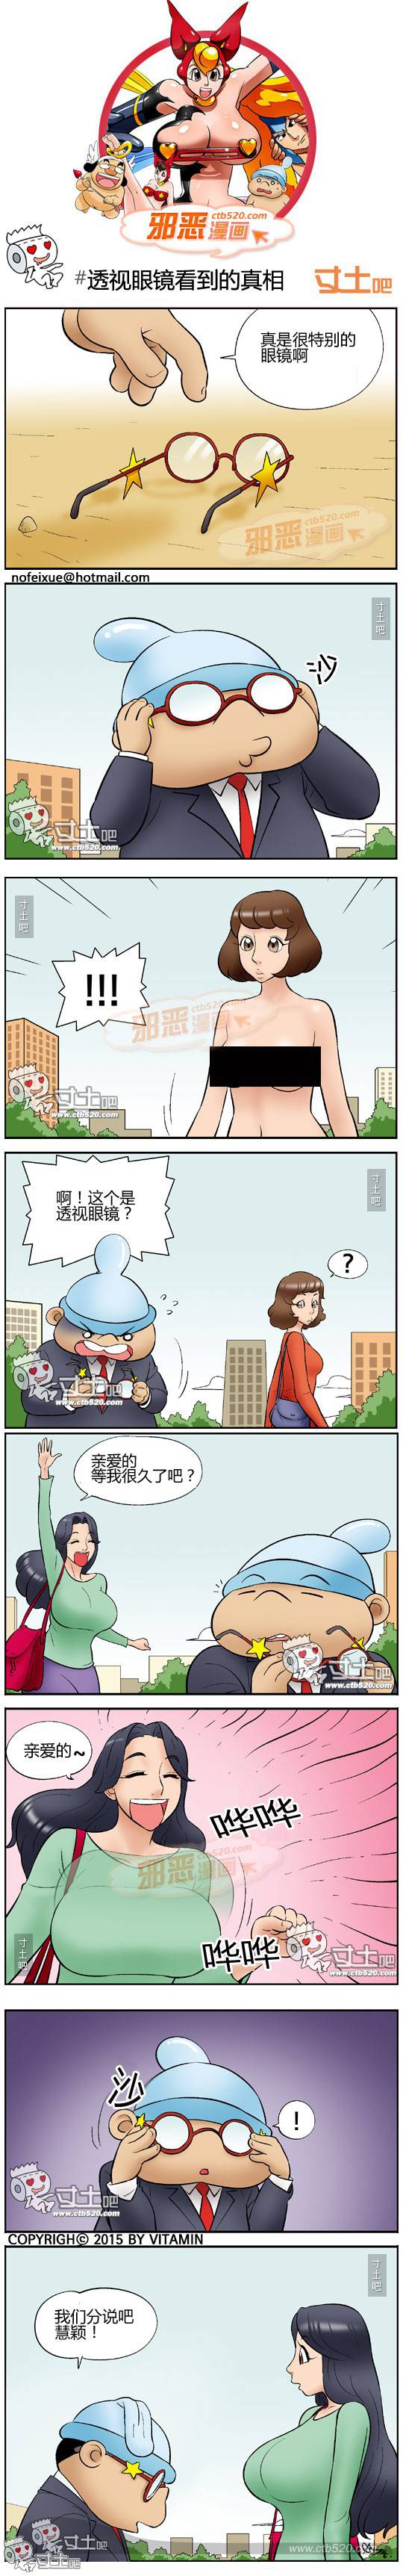 邪恶漫画爆笑囧图第306刊：欲望产生变化